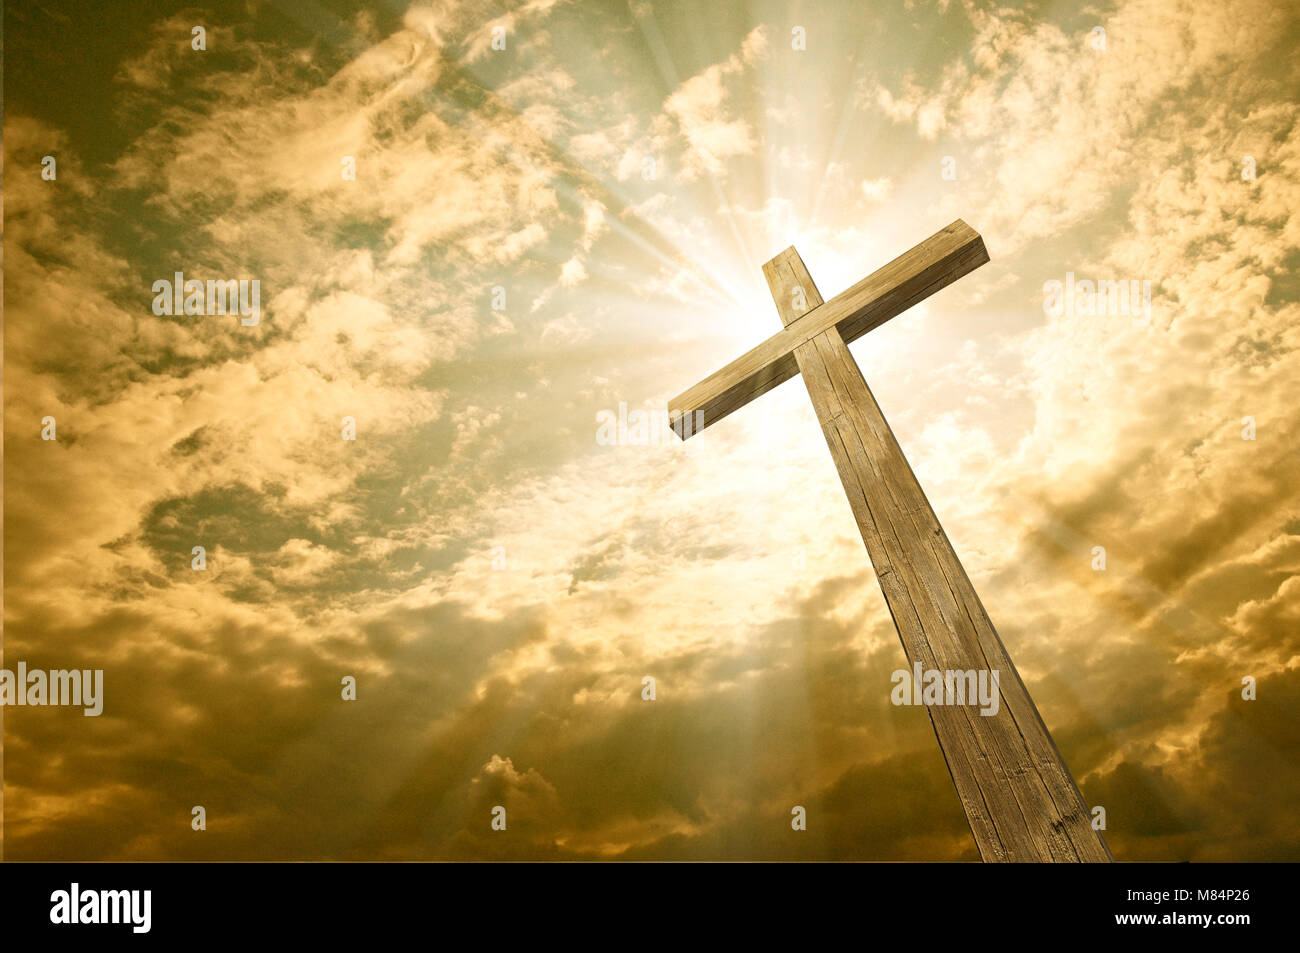 Croix de bois sur le fond de ciel avec des nuages, 3D illustration, Joyeuses Pâques. Symbole chrétien. Banque D'Images